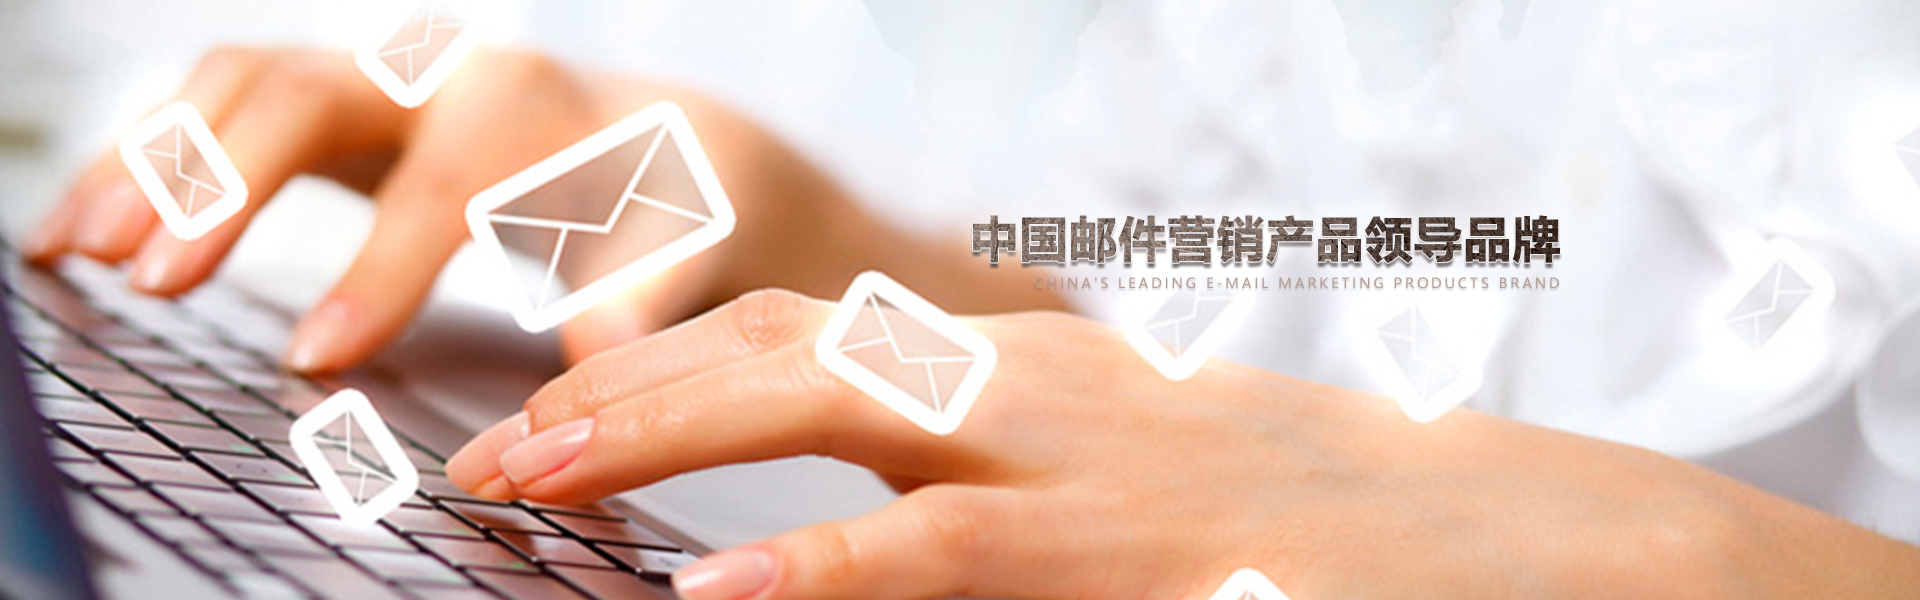 武汉电子邮箱营销软件